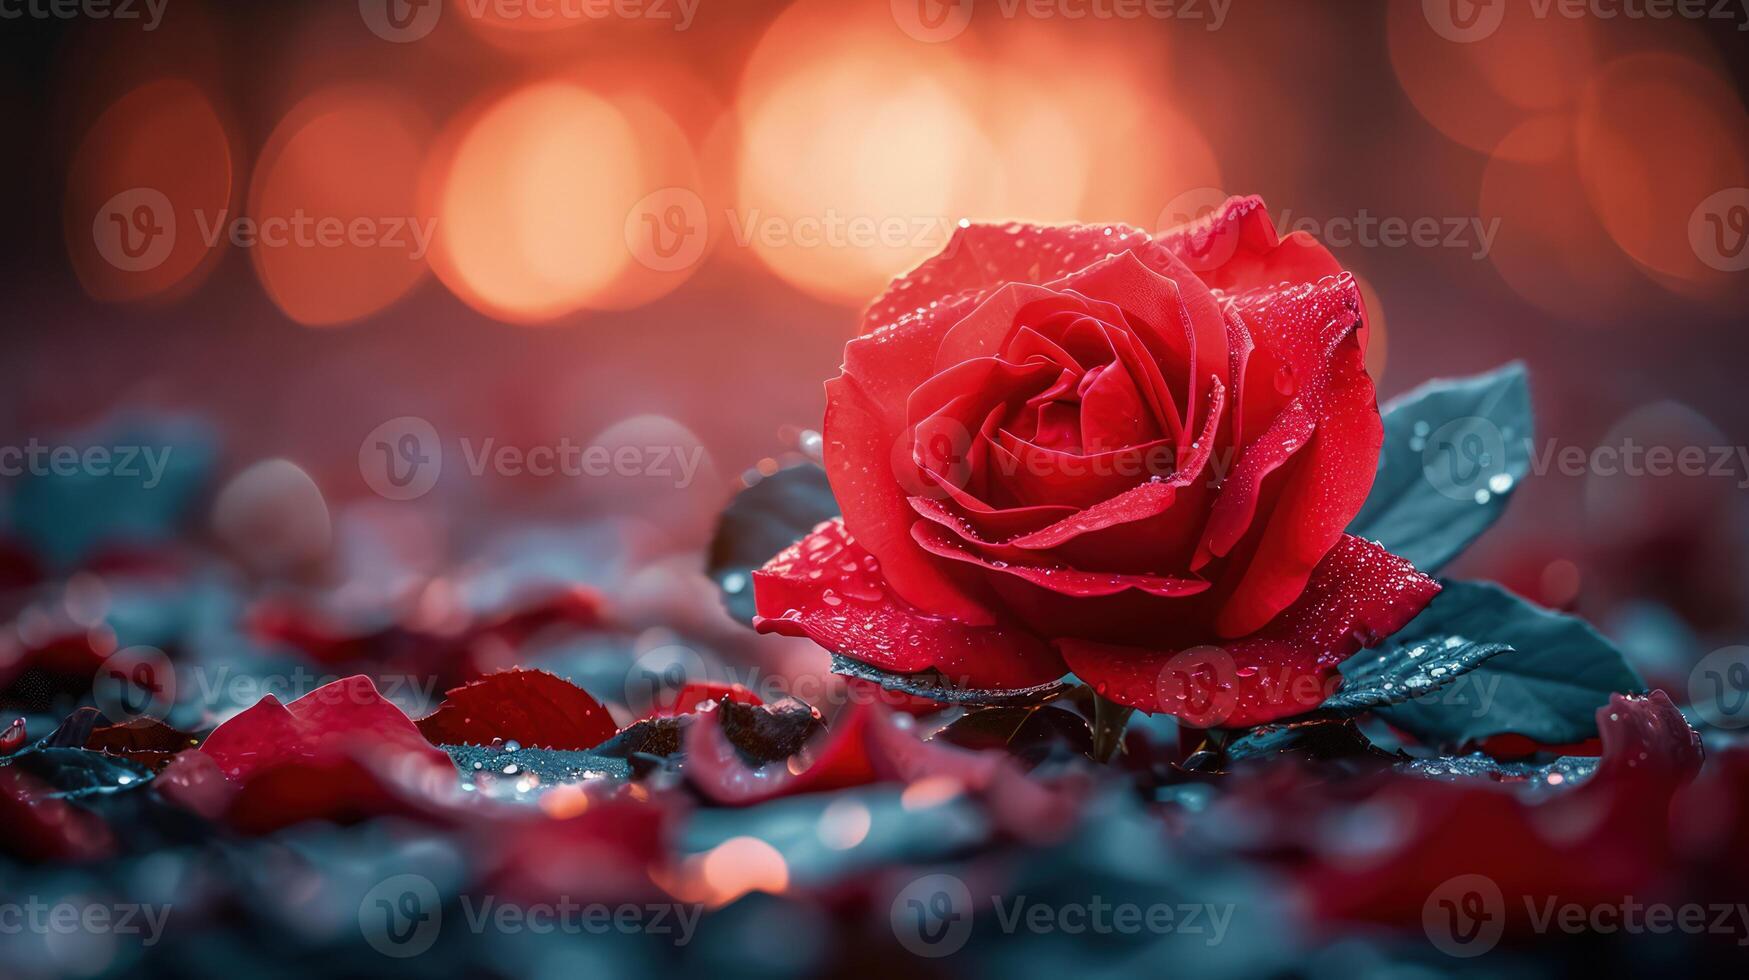 Nahansicht von ein rot Rose mit Tautropfen umgeben durch Blütenblätter, einstellen gegen ein verträumt, Bokeh-beleuchtet Hintergrund. perfekt zum romantisch Themen, Valentinstag Tag, Liebe, und Natur. elegant und atmosphärisch. foto